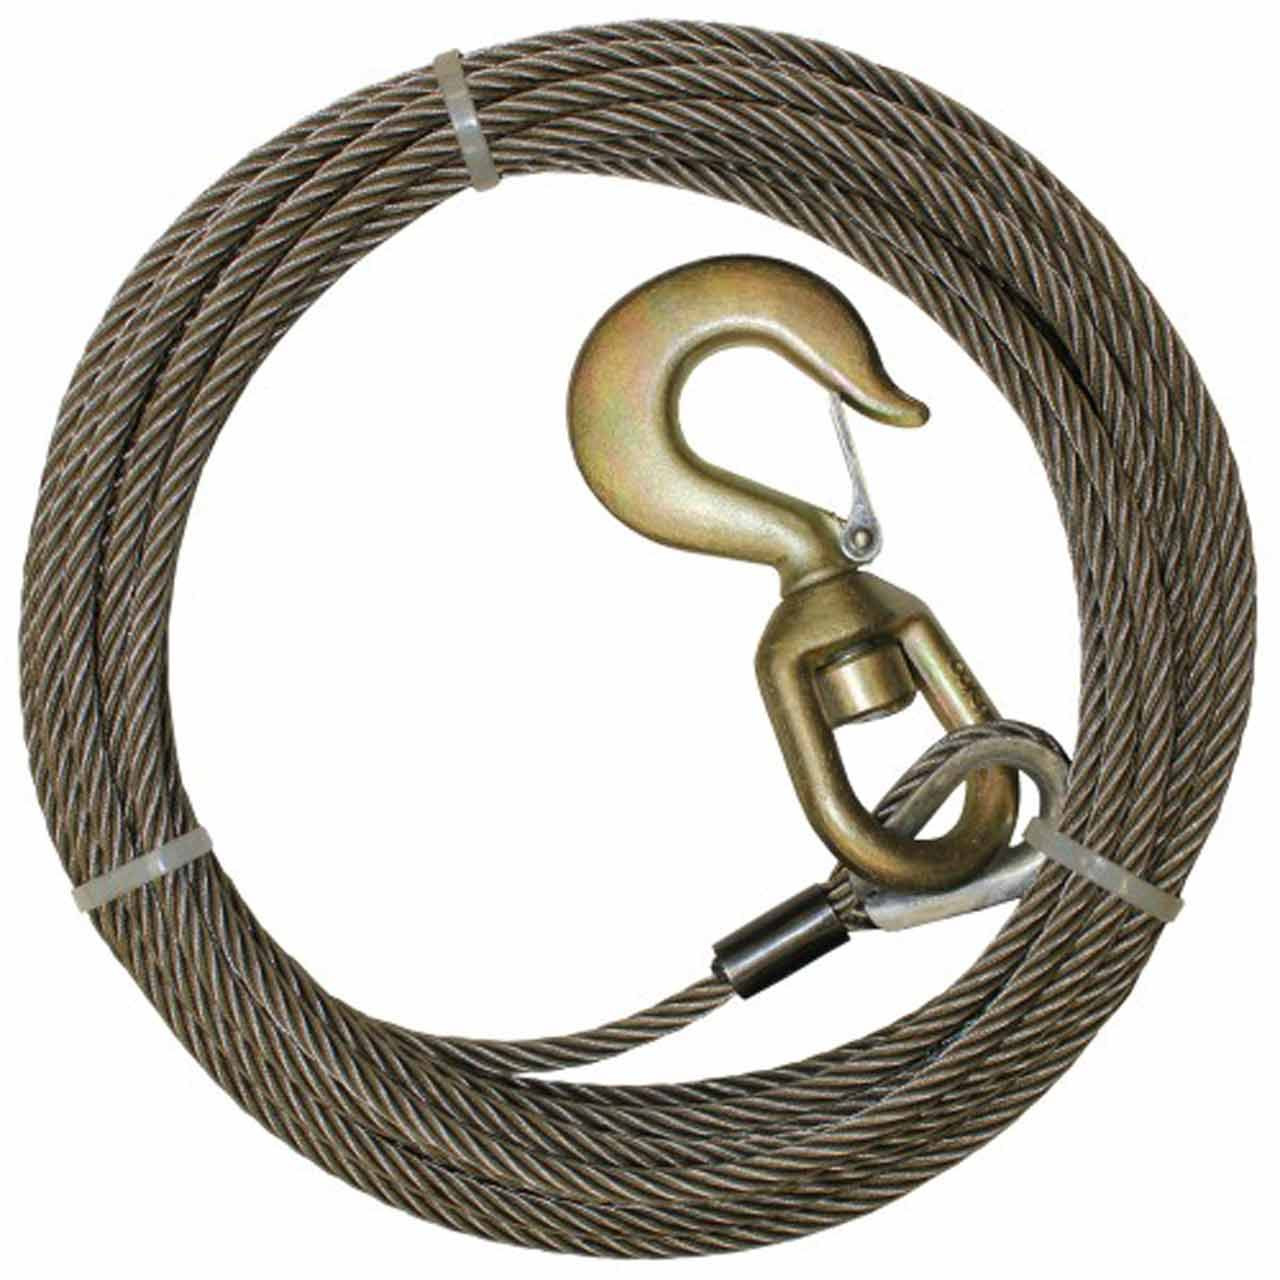 1/2 x 75' Steel Core Winch Line Wire Rope Wrecker Cable Swivel Hook